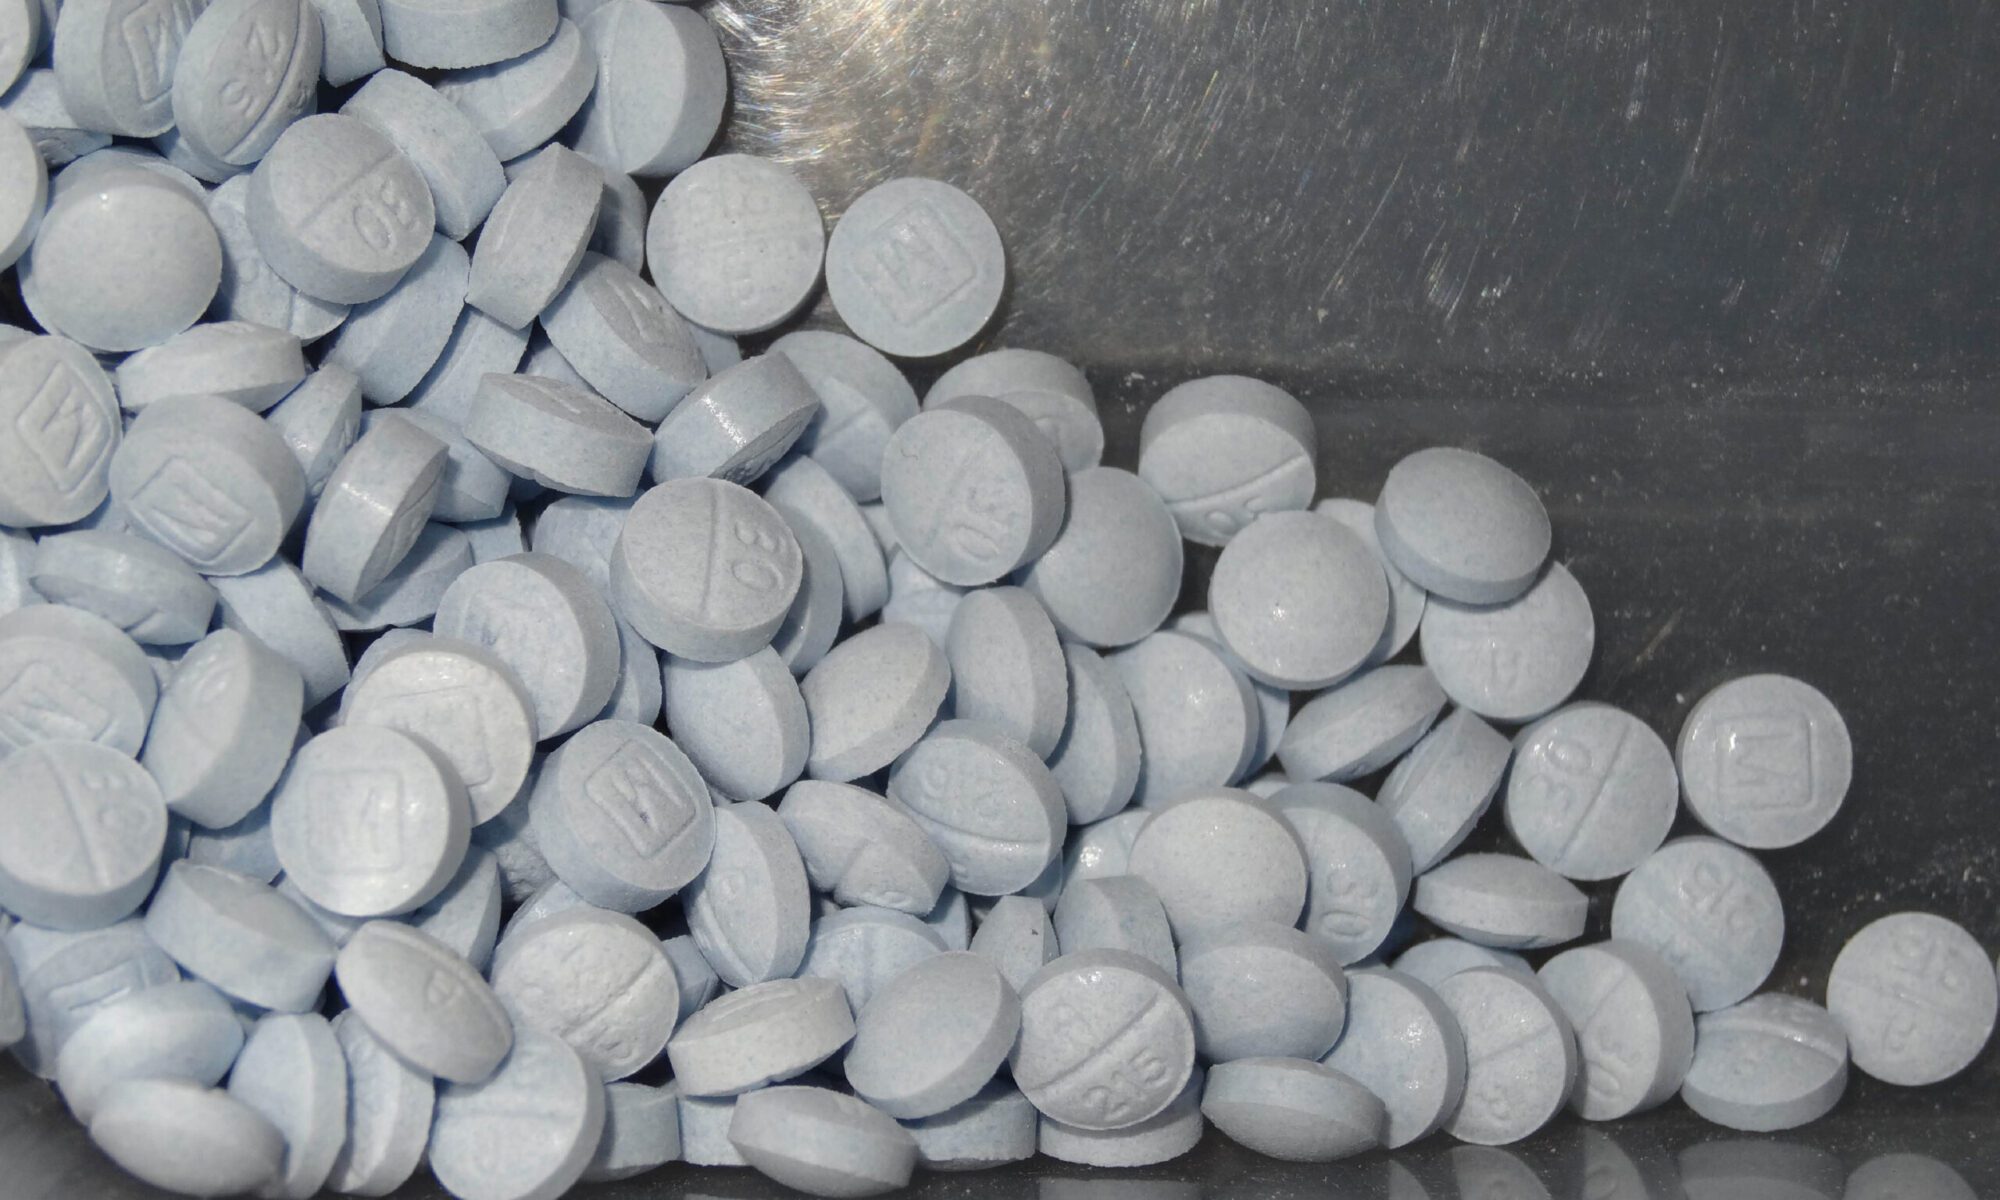 Fentanyl pills in bag